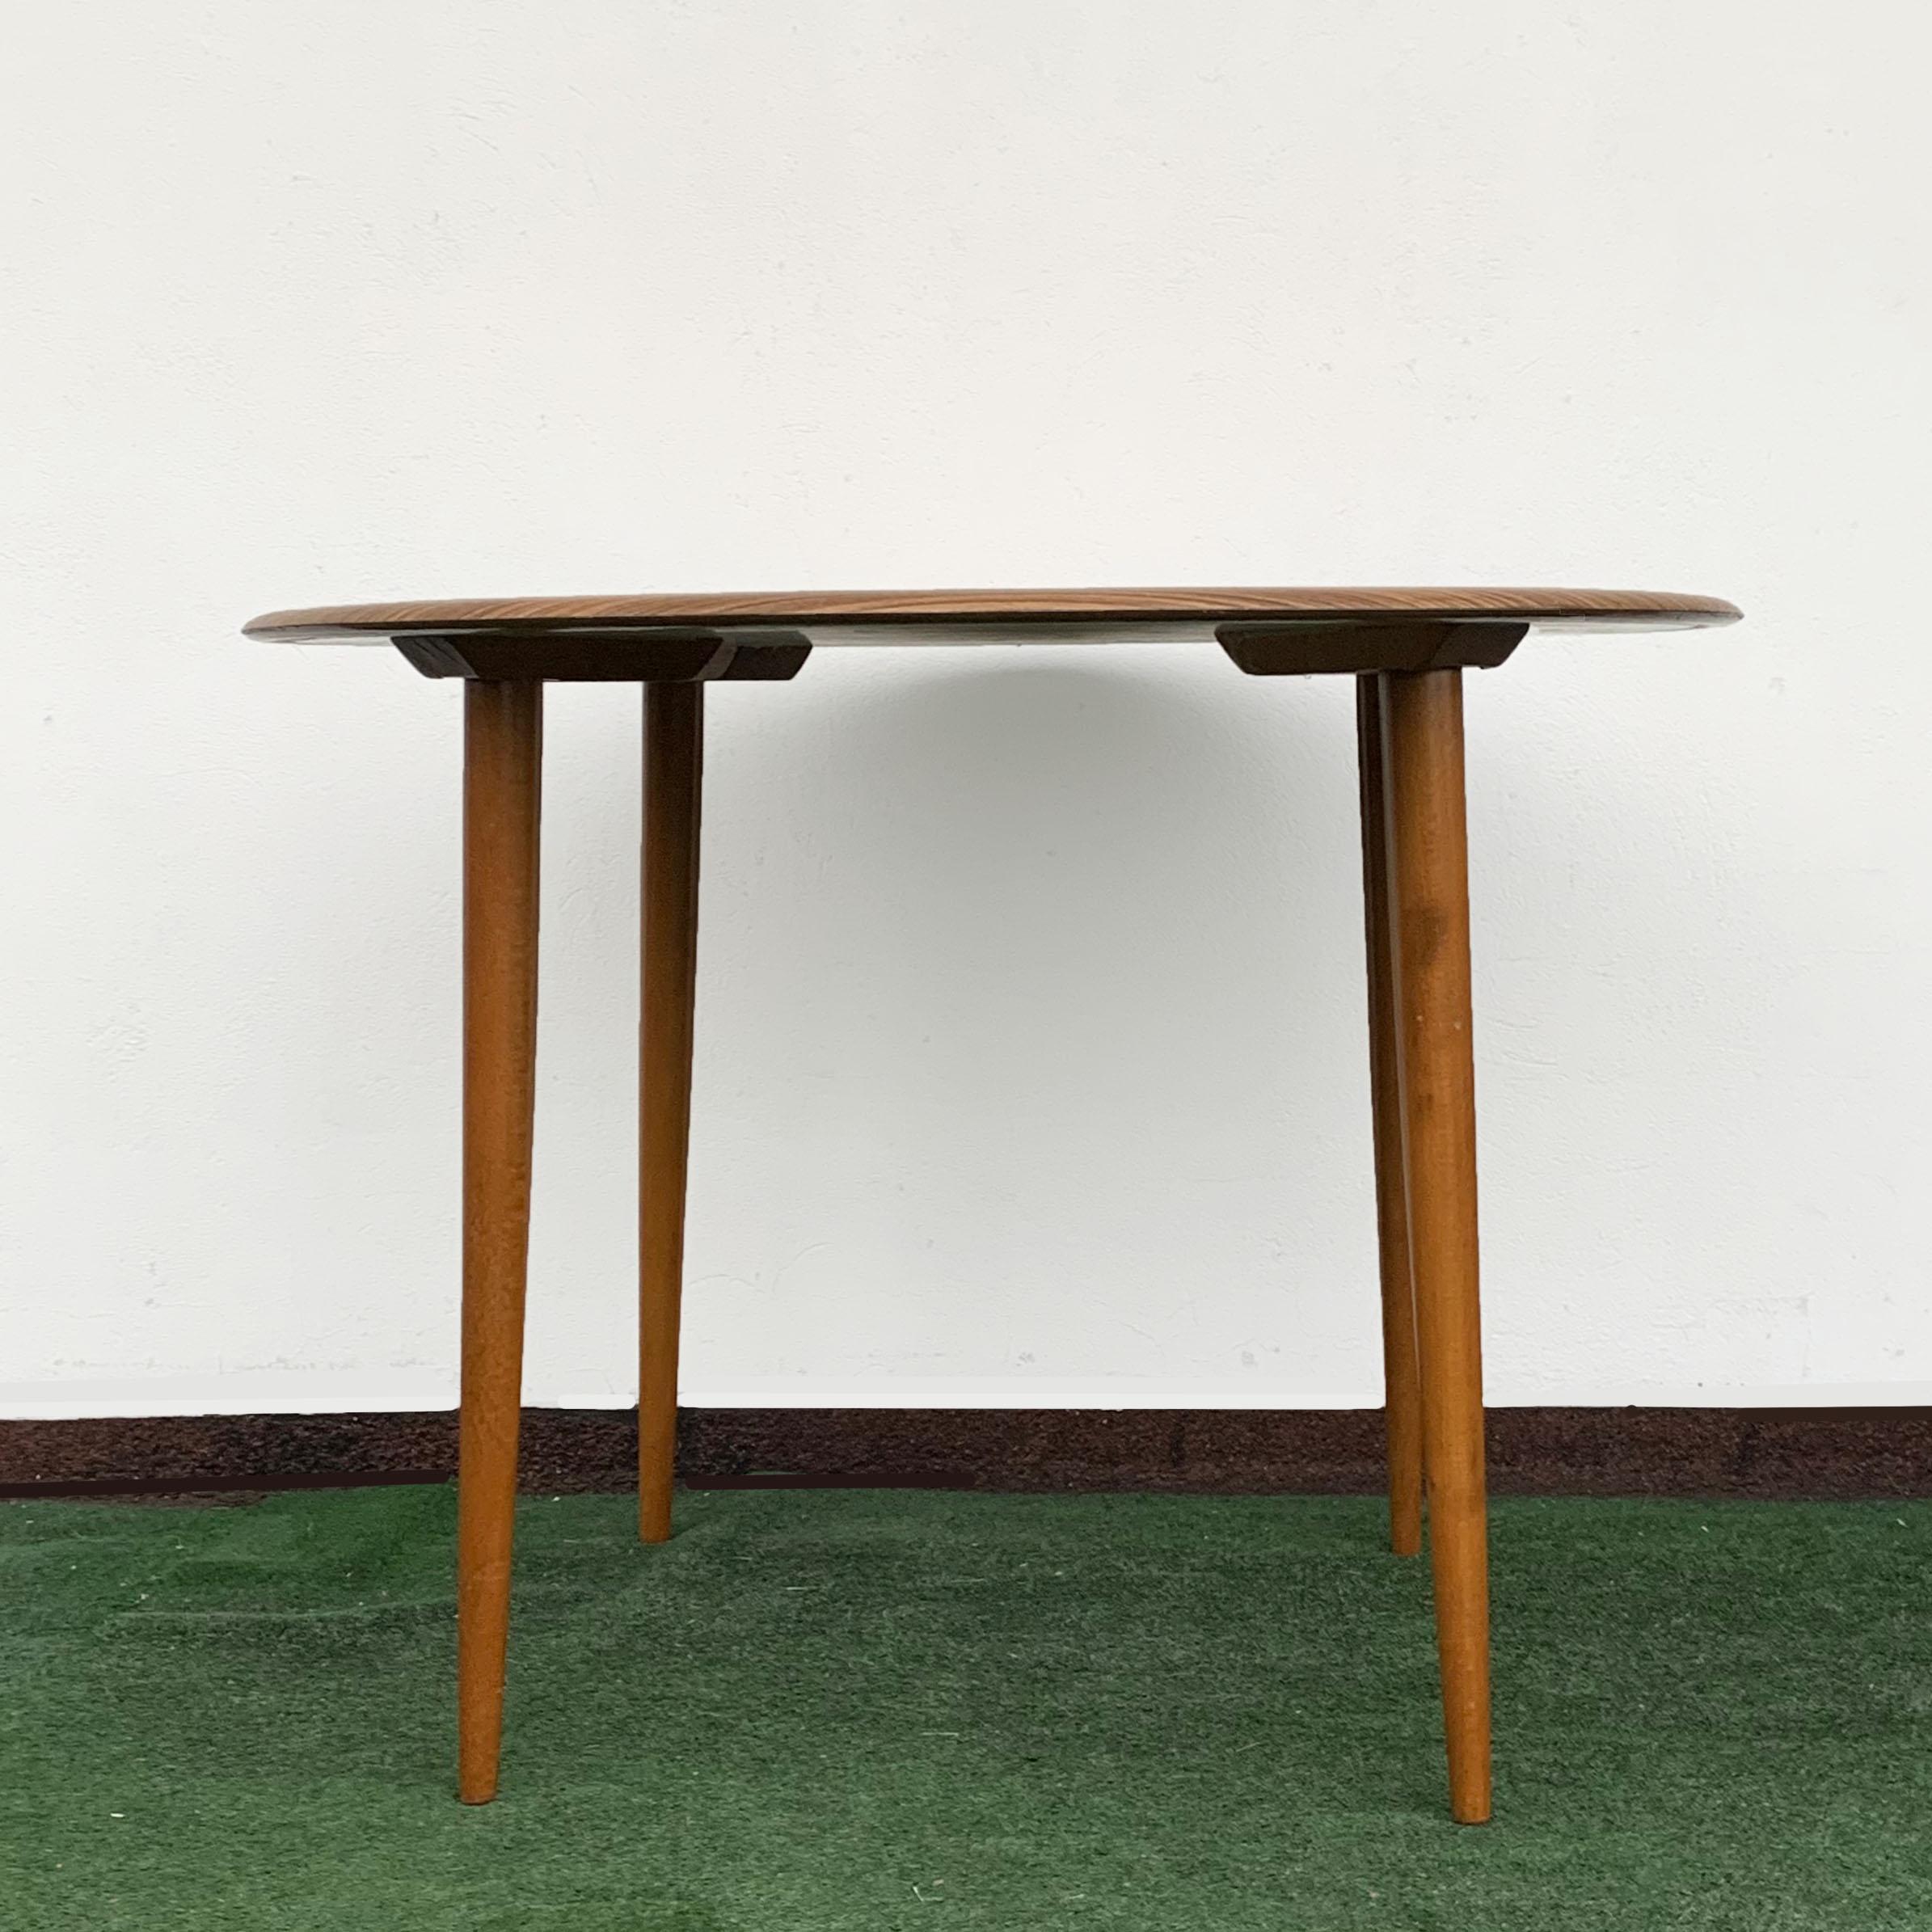 Runder Tisch von Opal Kleinmöbel. Dänischer Jahrgang. Ein deutscher Designklassiker aus den 1960er Jahren.

Alle Beine sind abnehmbar, so dass dieser ganz besondere Tisch leicht zu transportieren oder zu lagern ist. 

Der Artikel wird mit dem